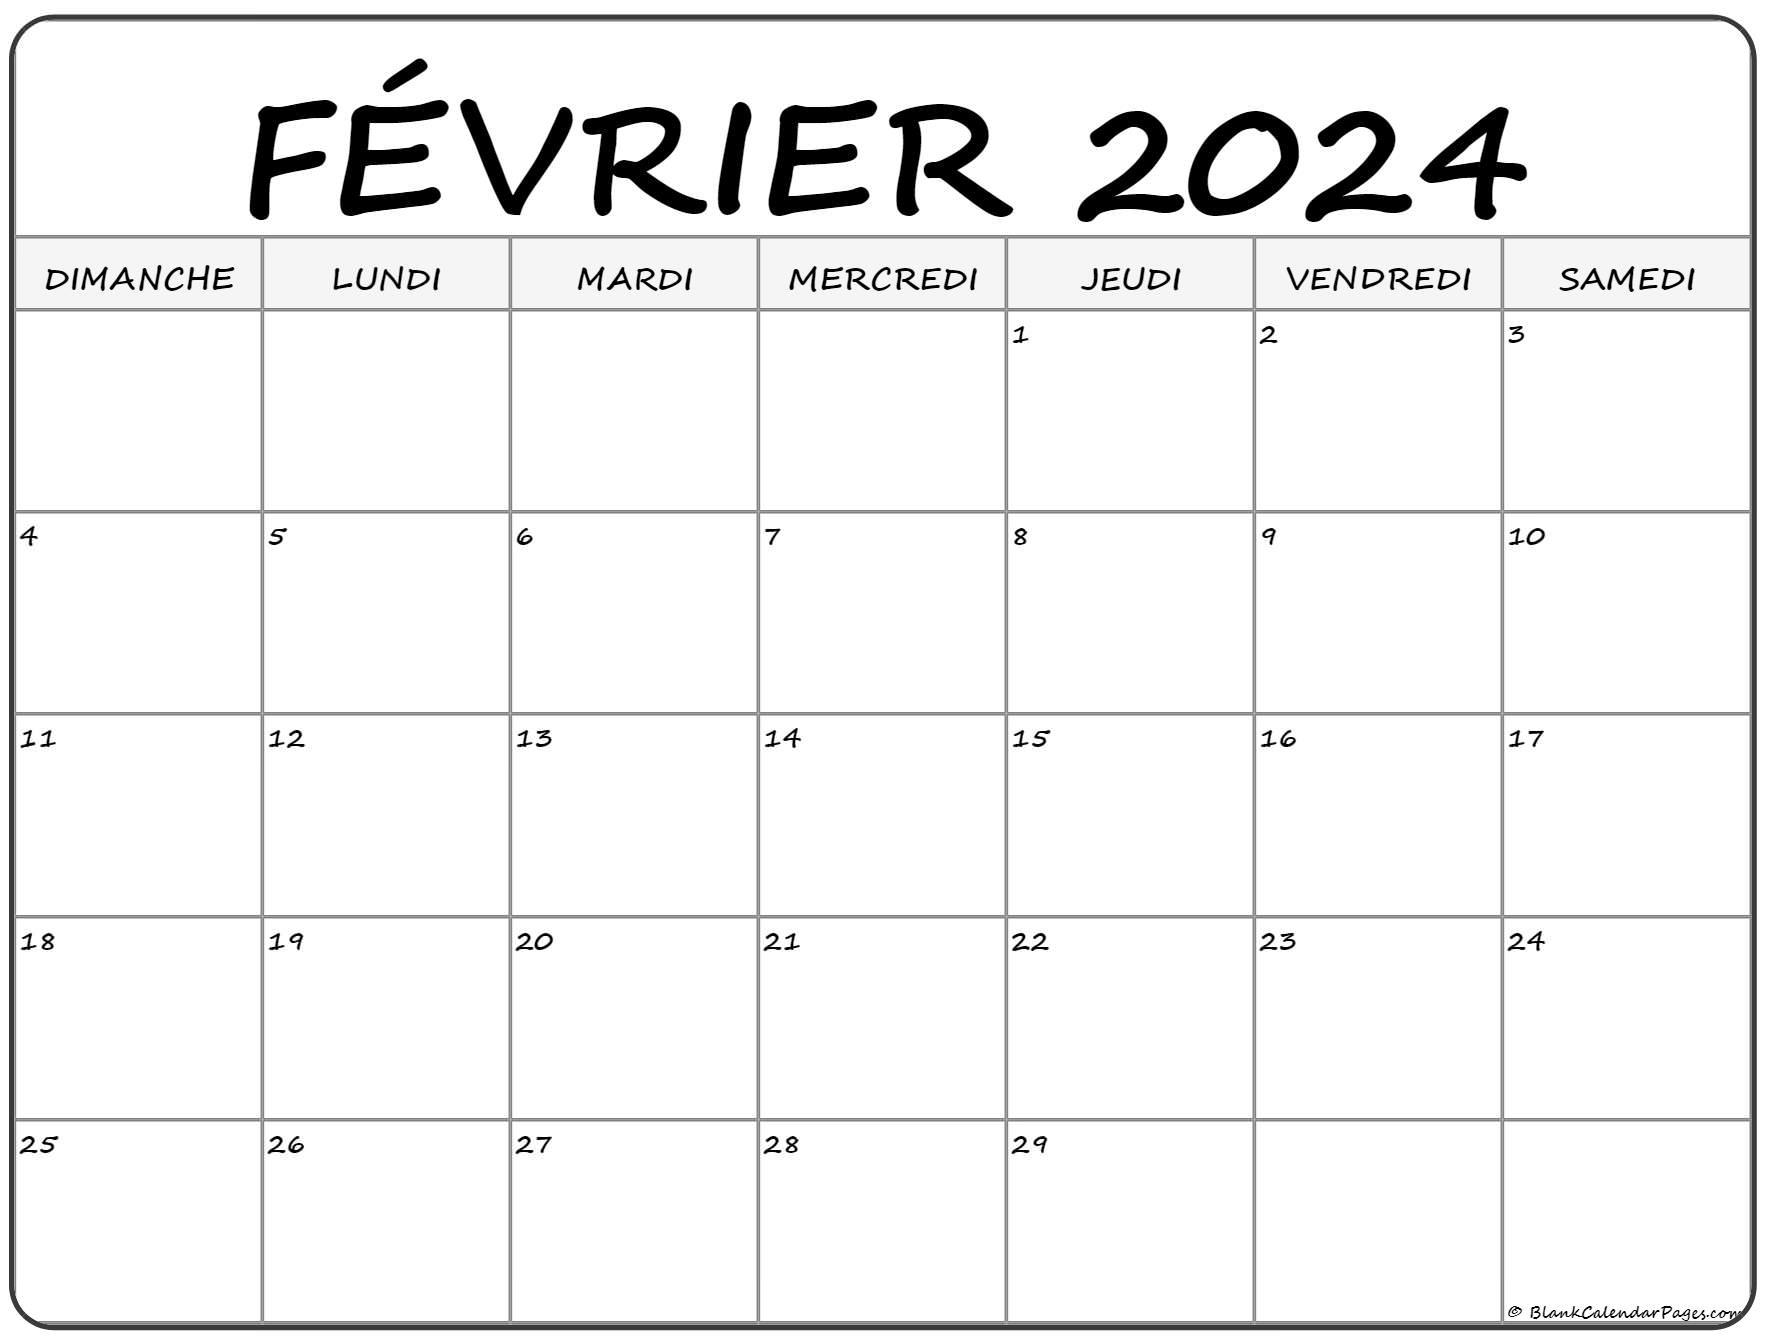 Calendrier Fevrier 2022 février 2022 calendrier imprimable | Calendrier gratuit